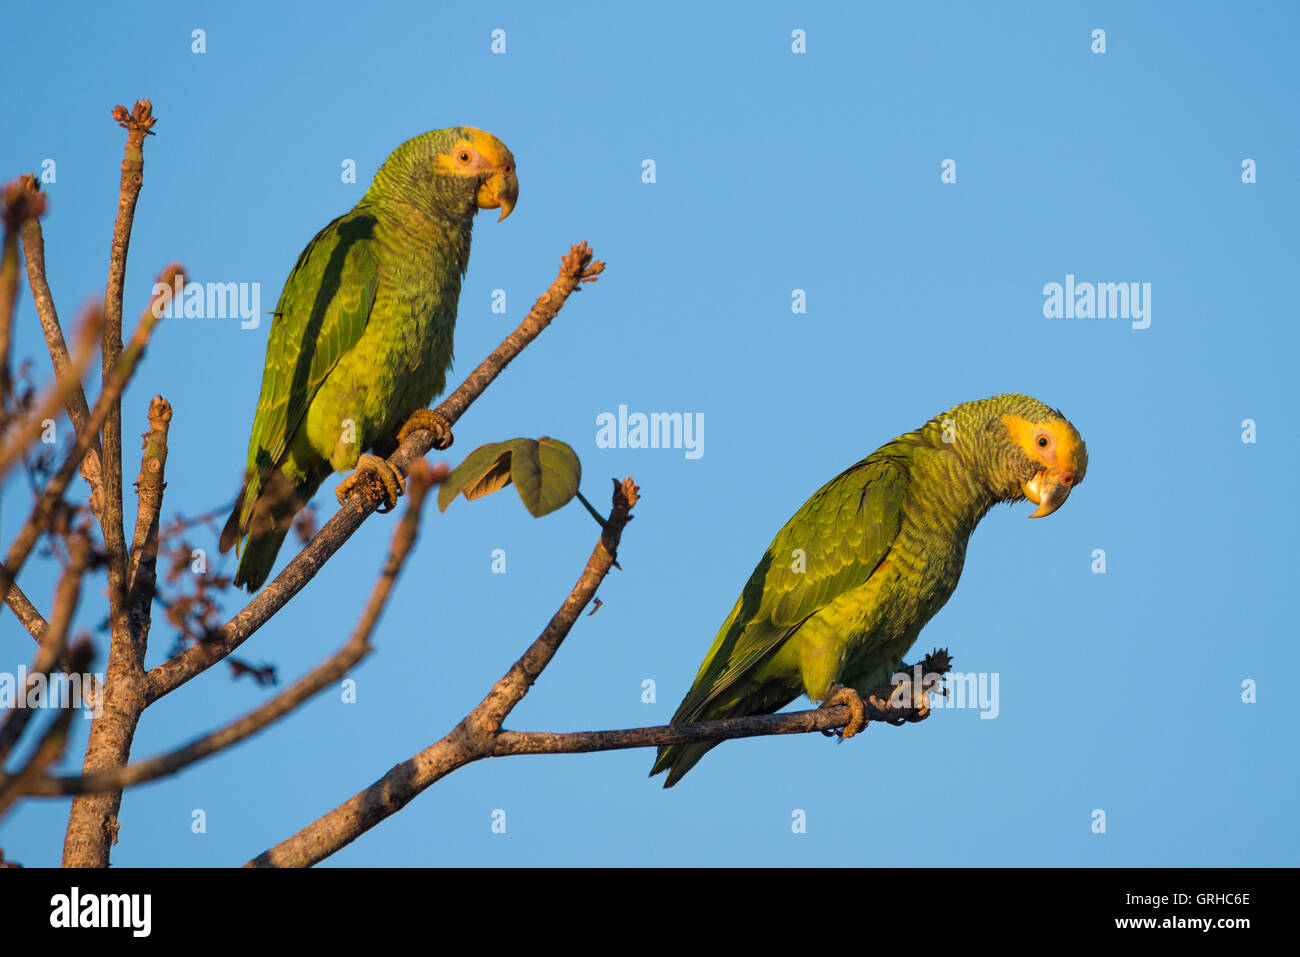 Disparition de perroquets jaune au centre du Brésil Banque D'Images